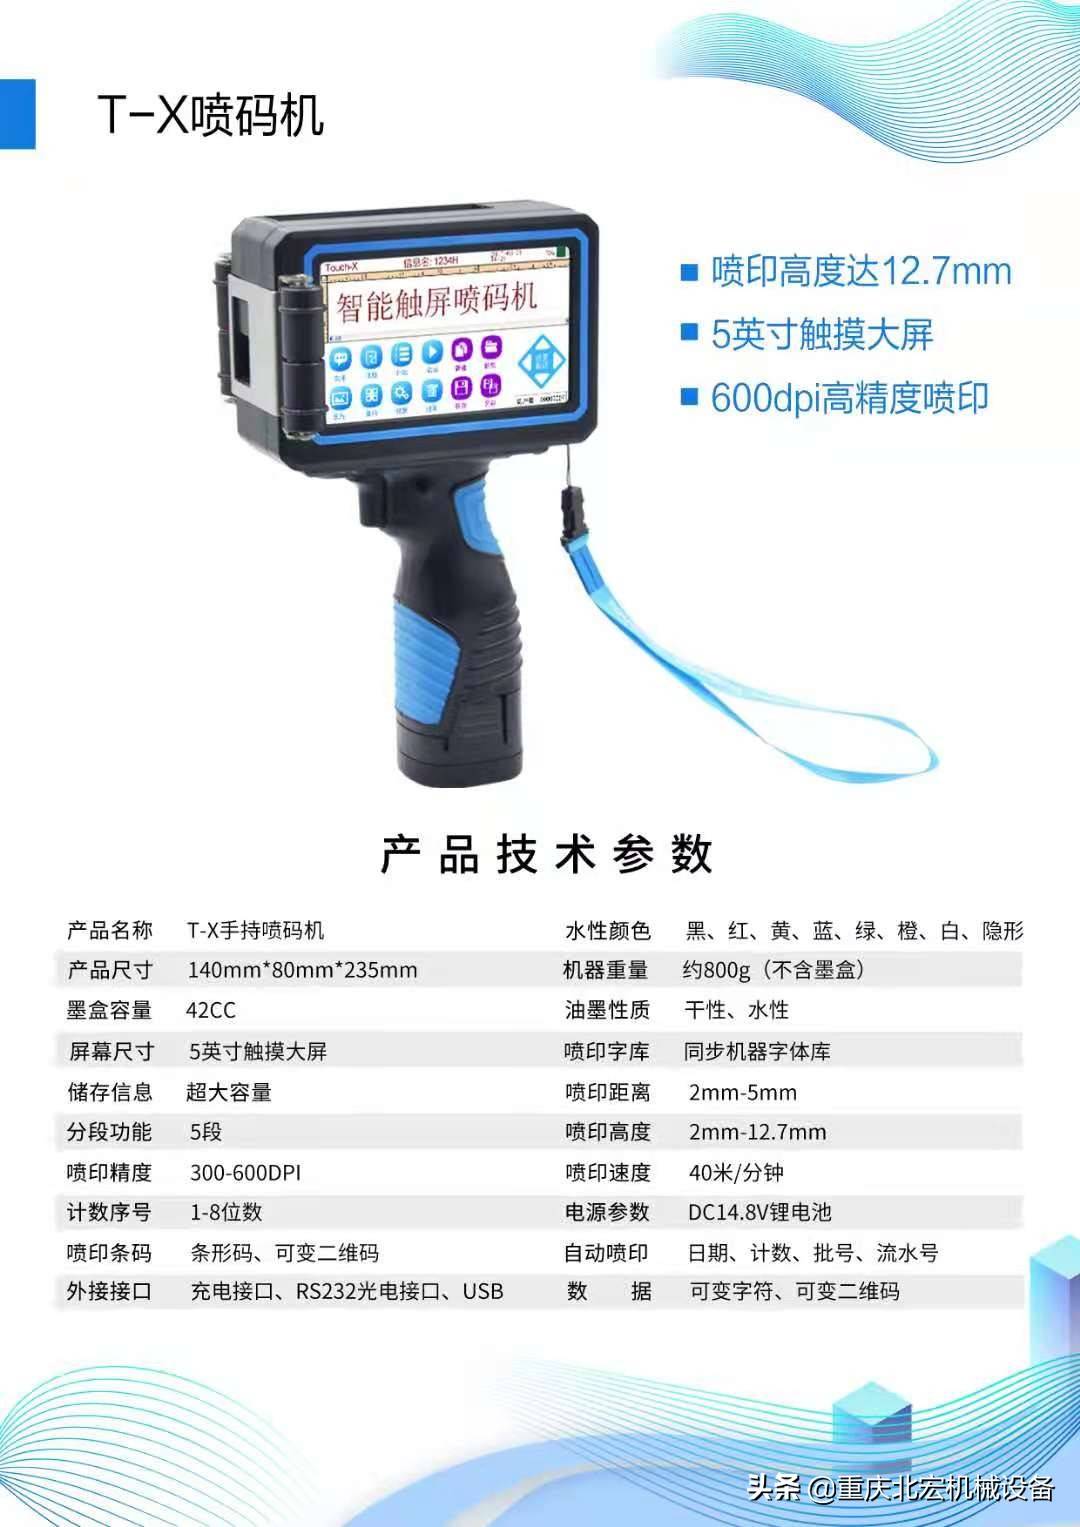 重庆北宏机械设备有限公司经营产品